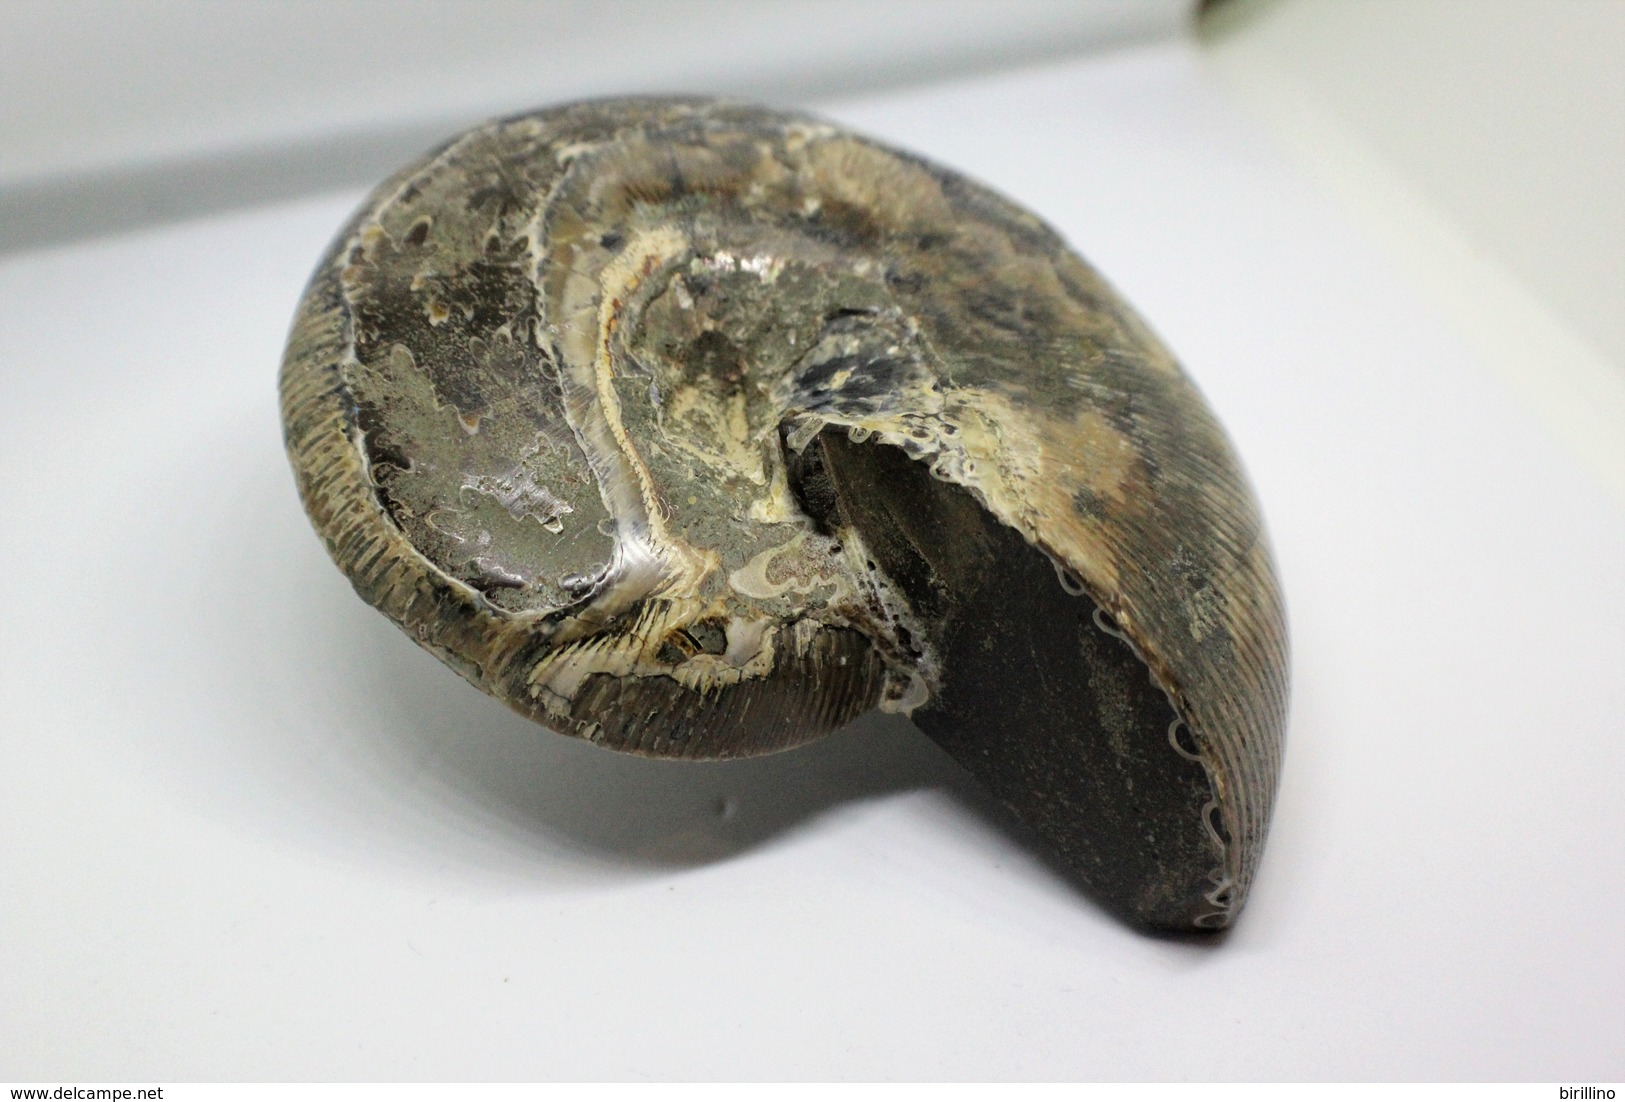 996 - Fossile di ammonite - Metà di fossile di conchiglia - Provenienza Madagascar Peso 371 gr